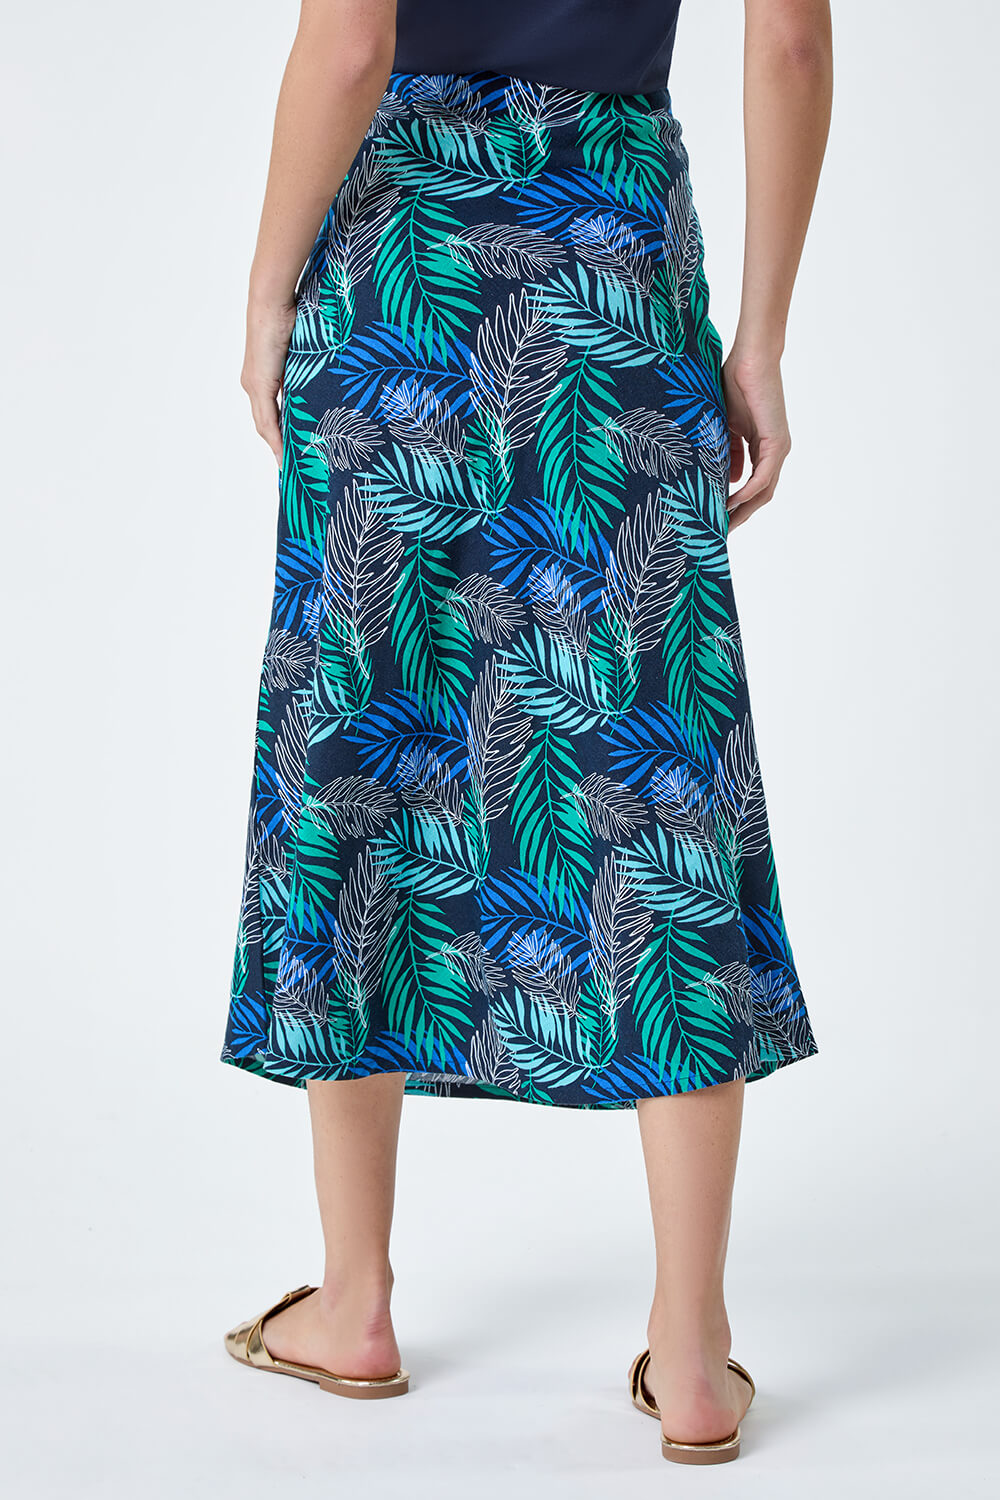 Blue Leaf Print Linen Blend A-Line Skirt, Image 3 of 5